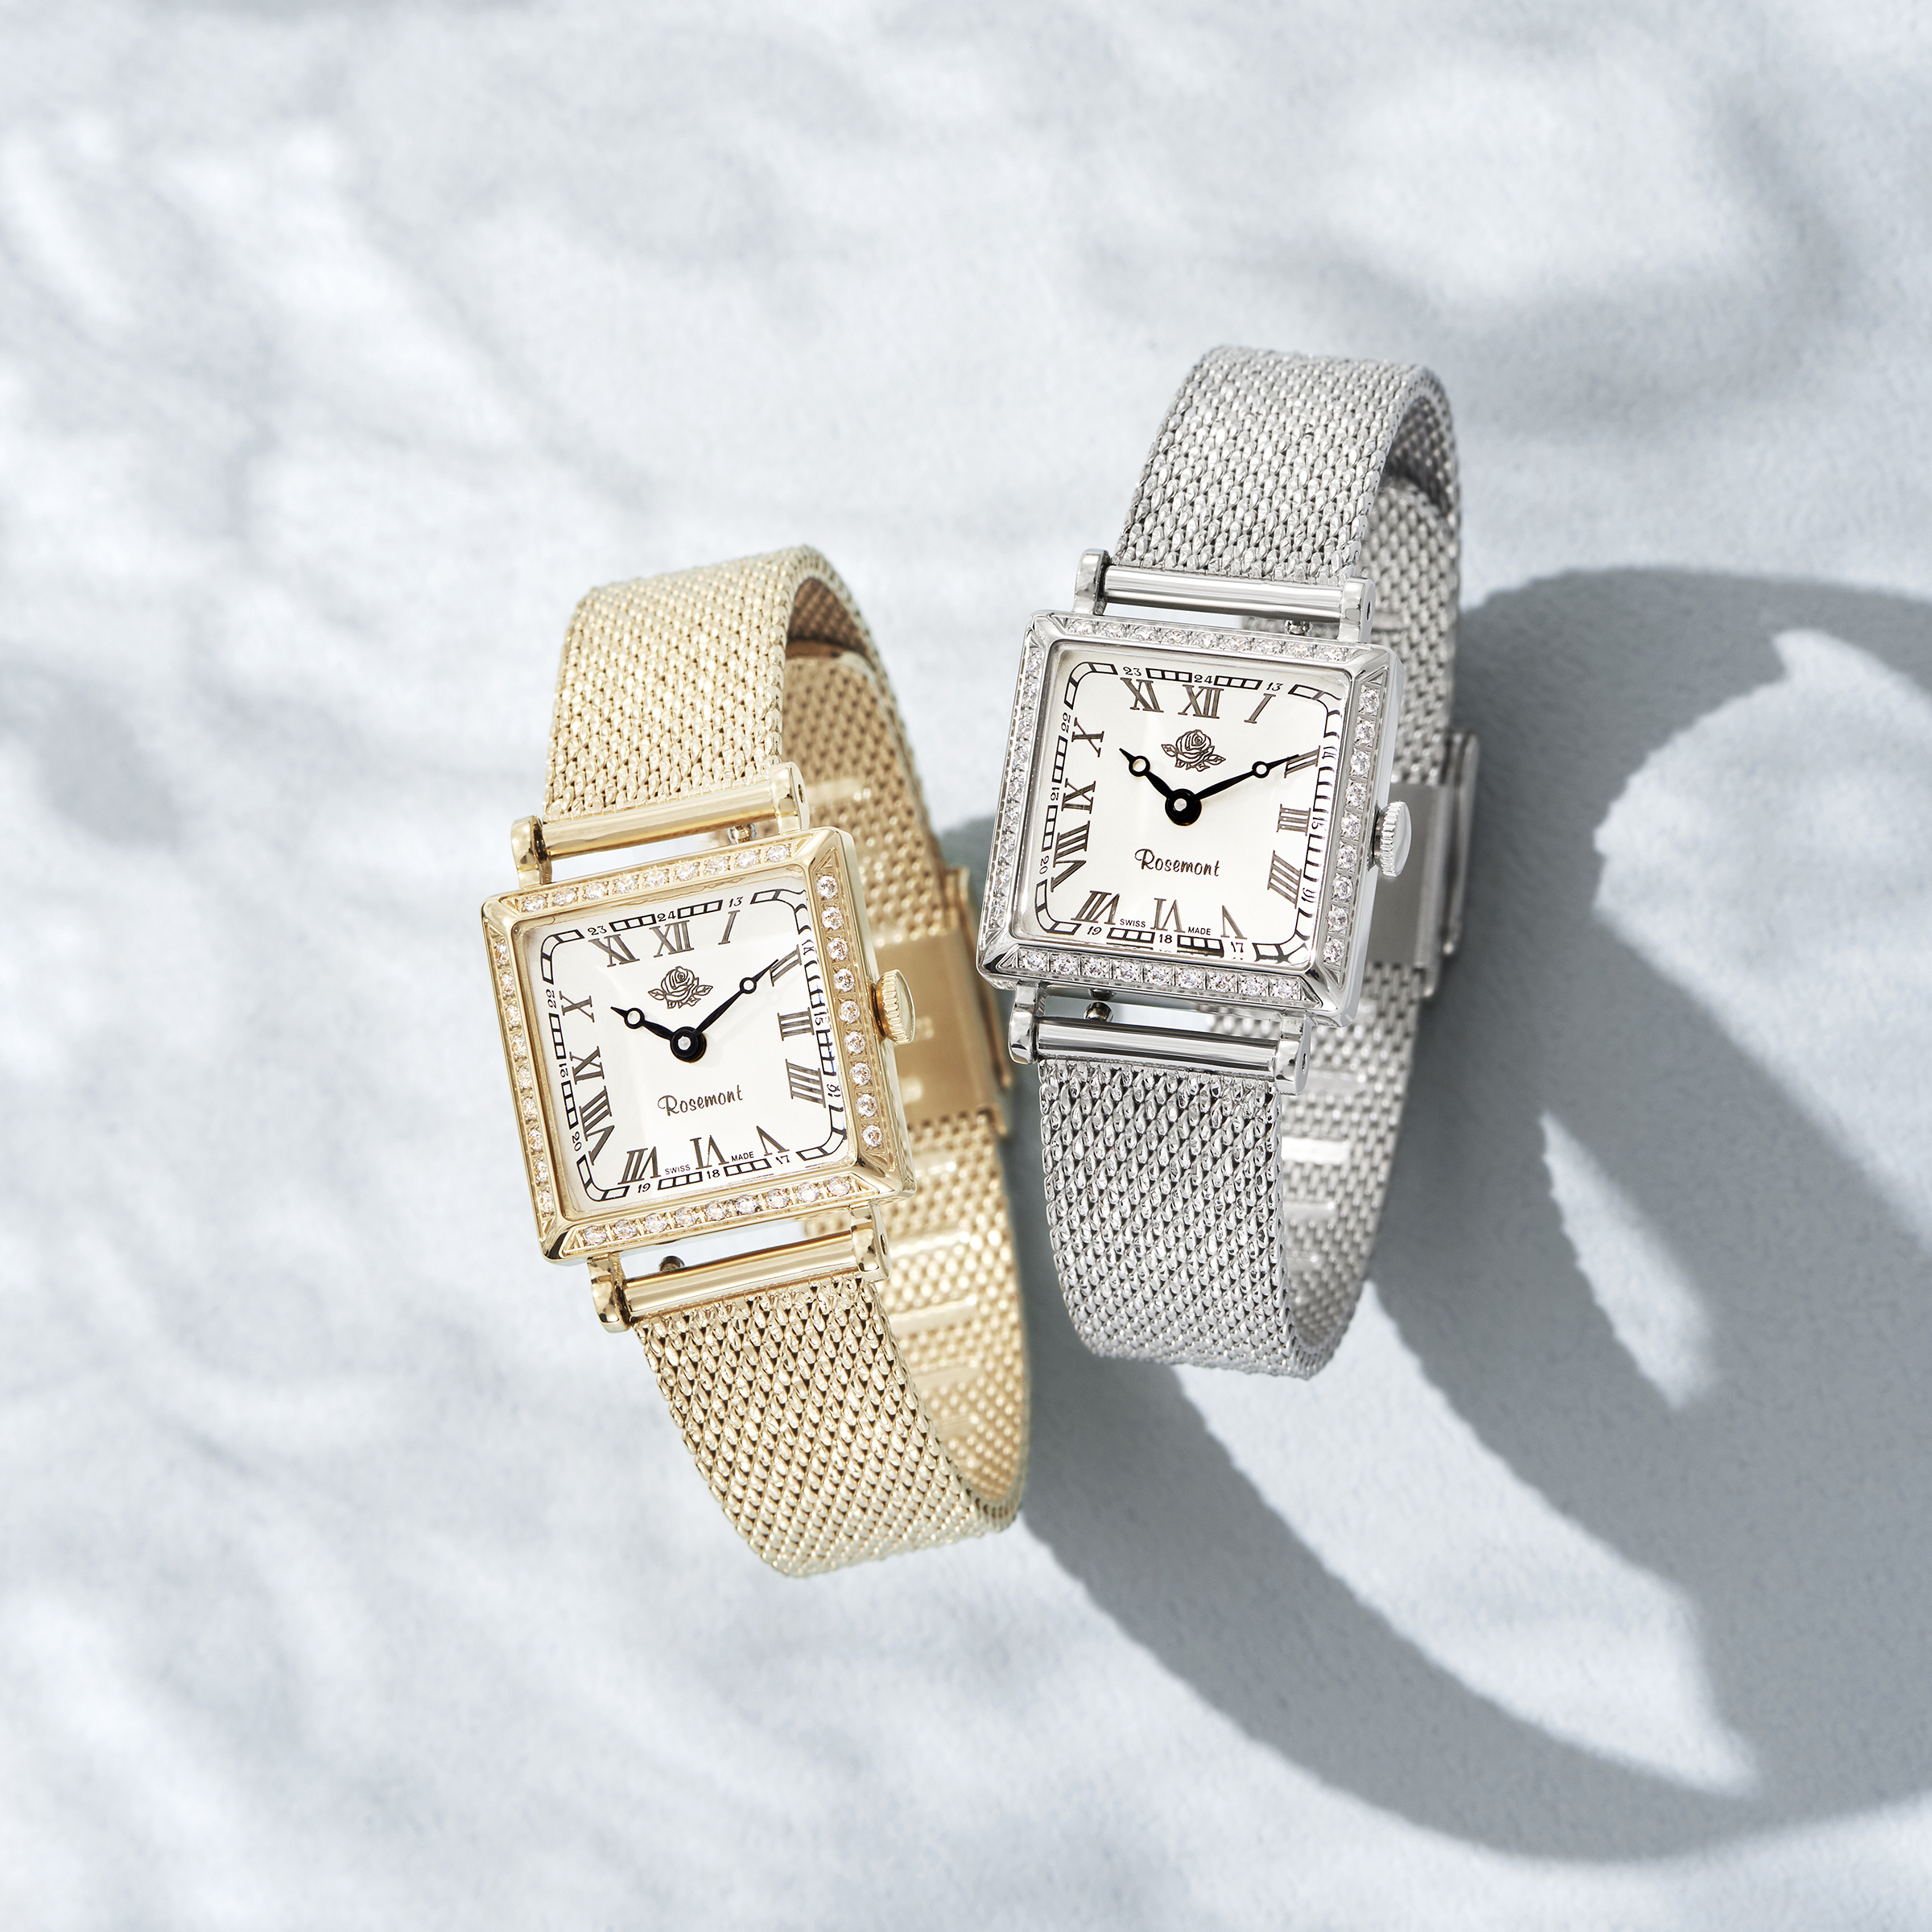 スイス製腕時計ブランド「Rosemont」が、大人可愛い 新コレクション